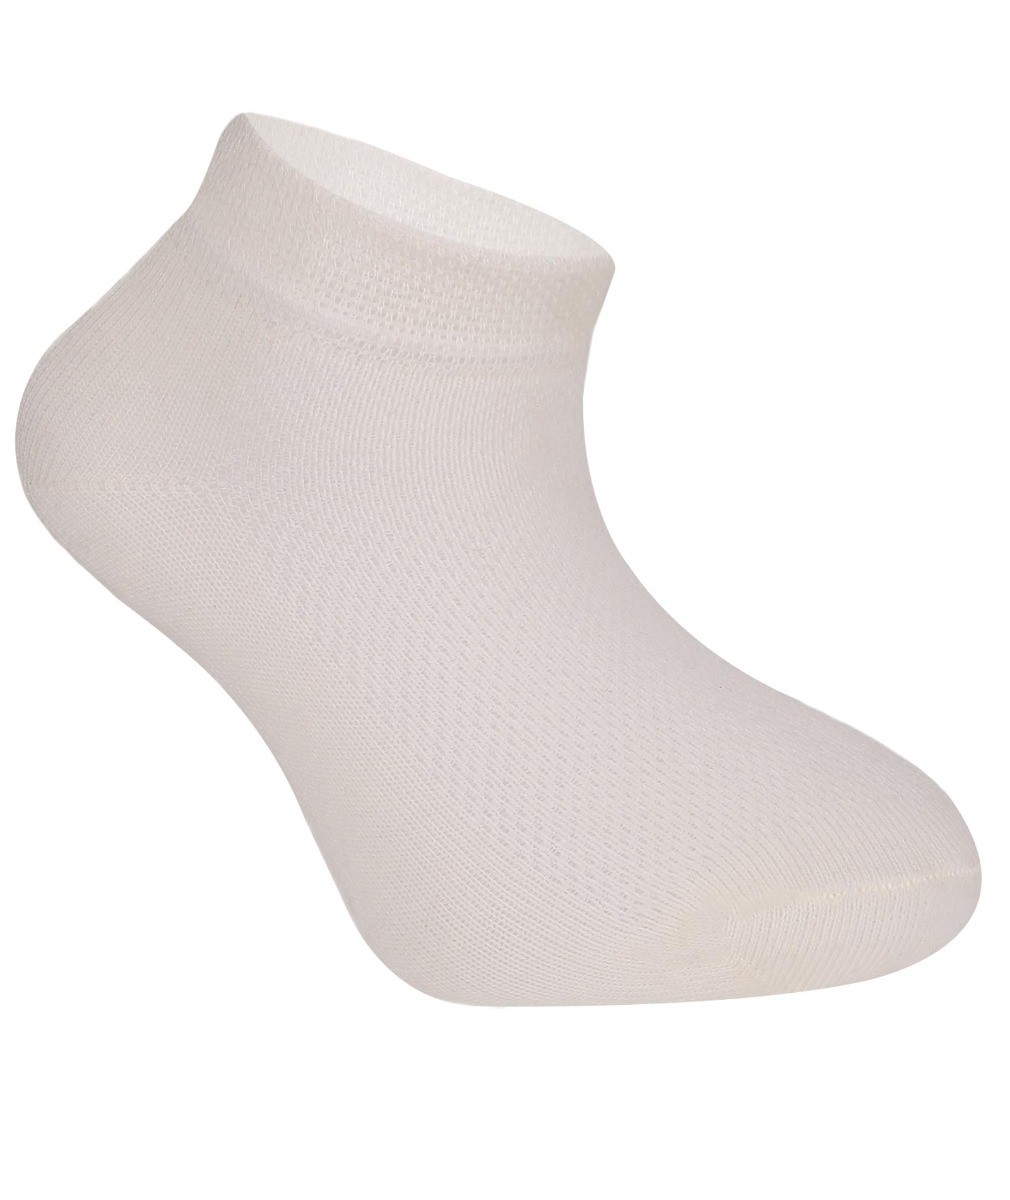 Kinder Unisex Socken aus Baumwolle - Creme